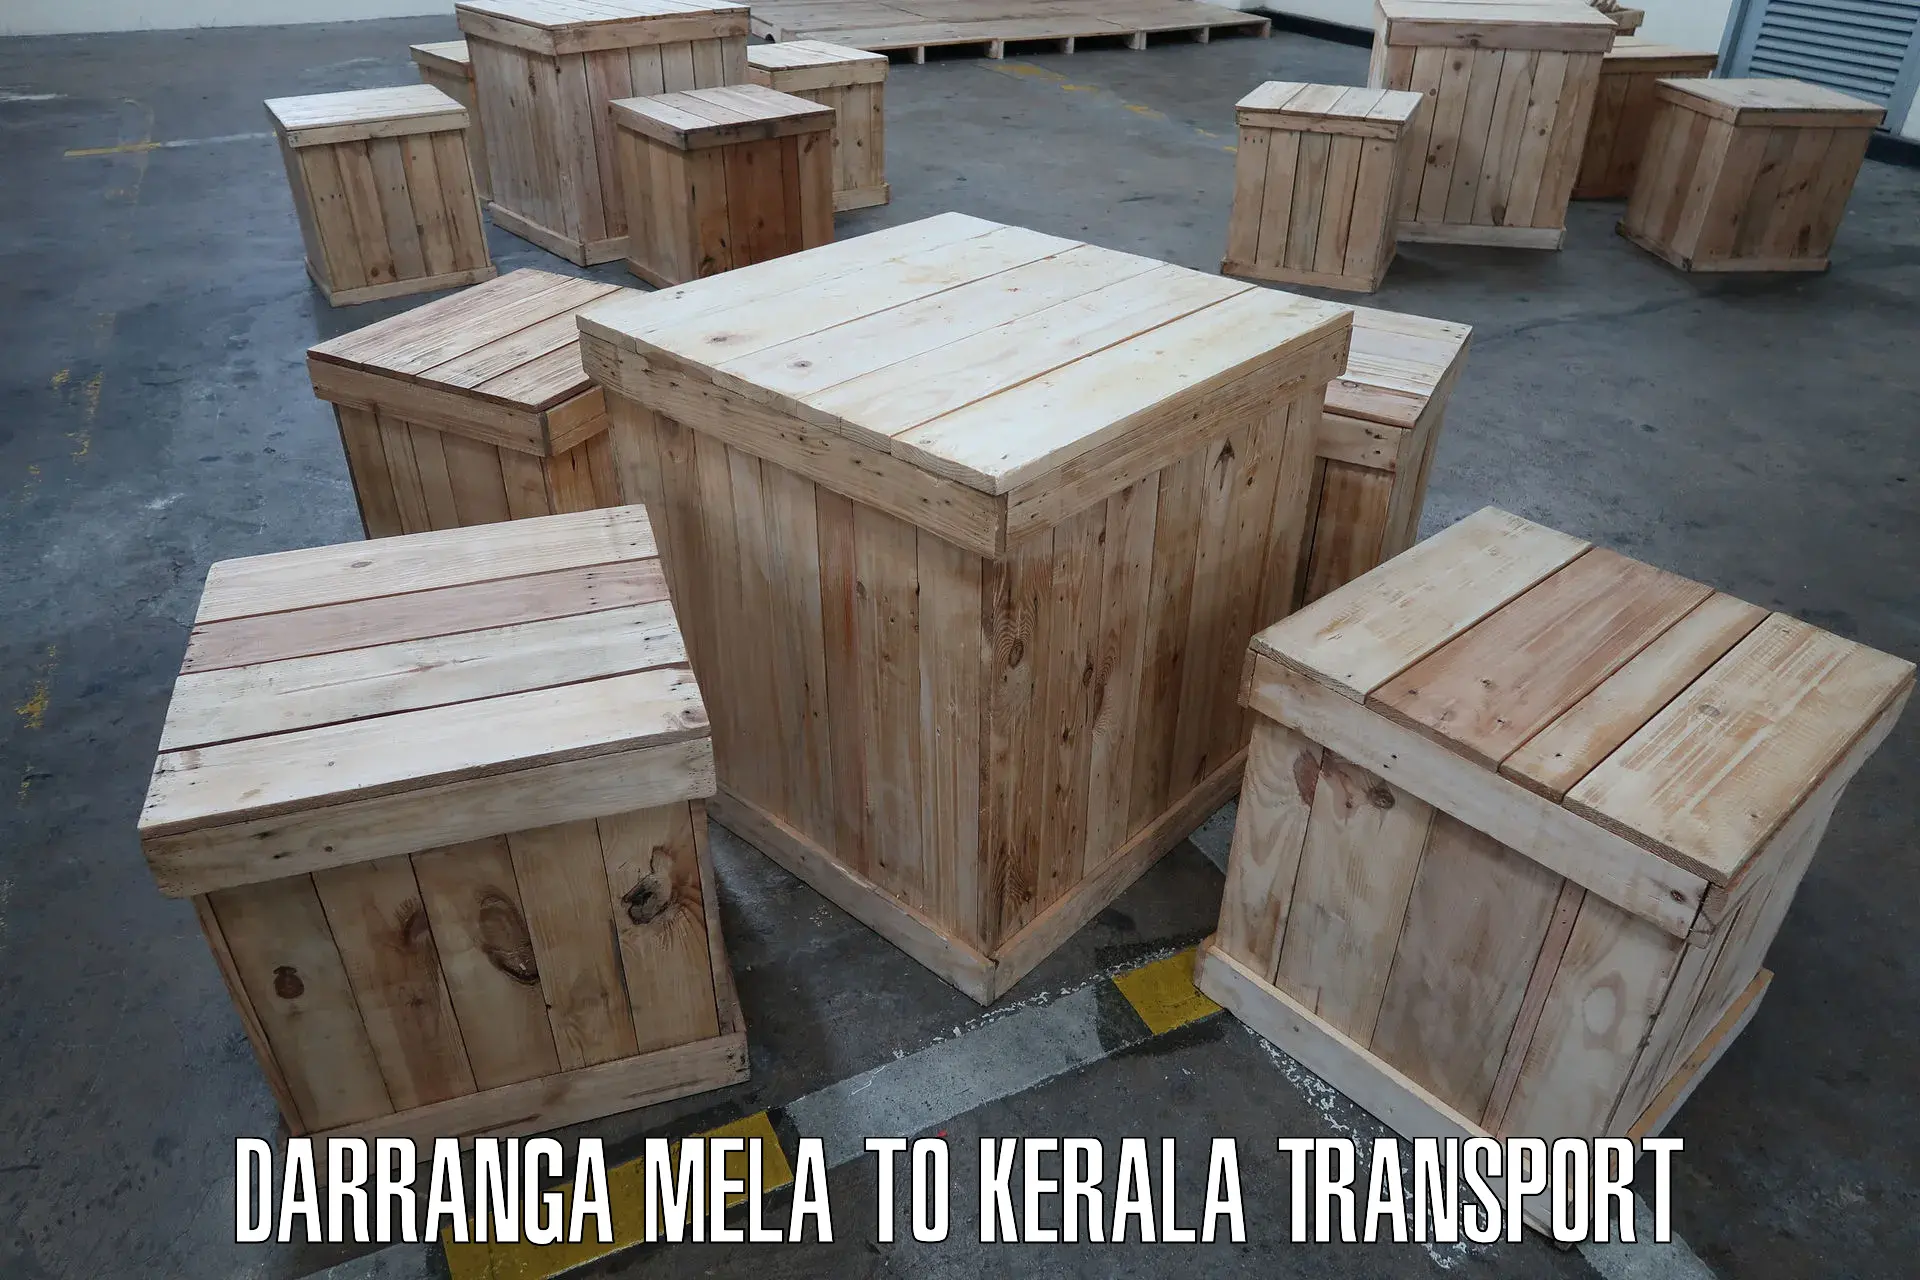 International cargo transportation services Darranga Mela to Mahe